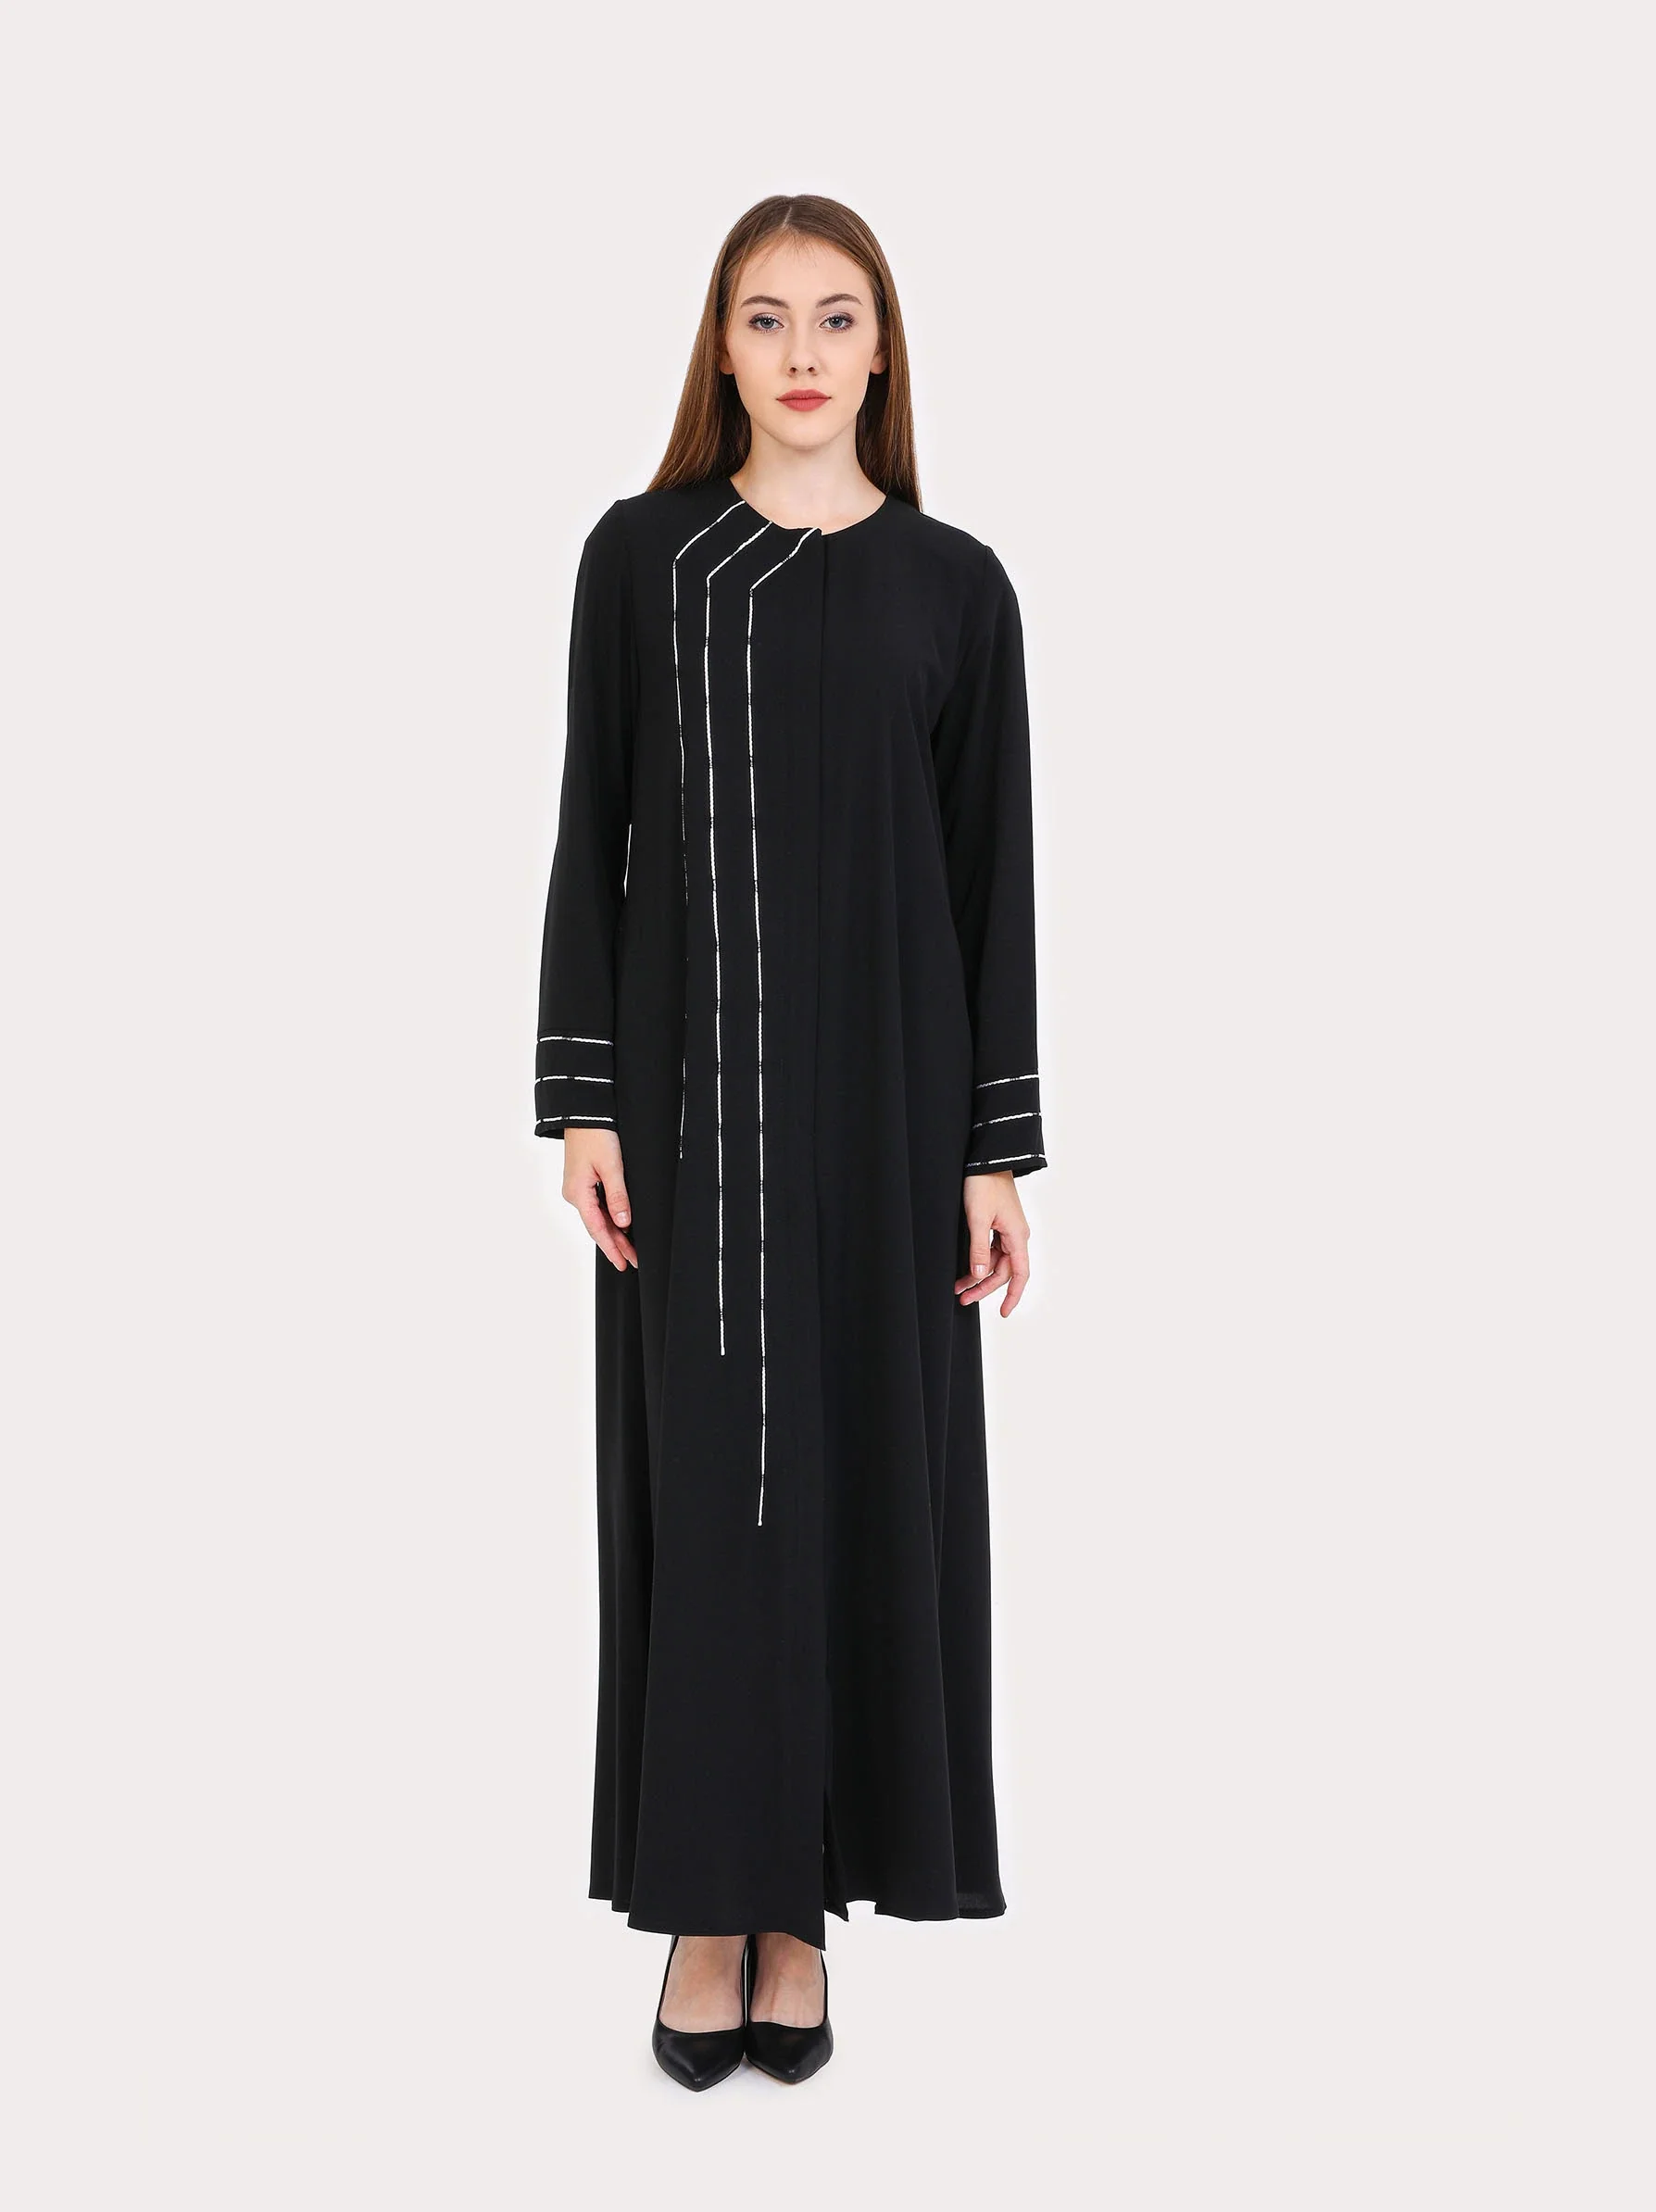 women wearing black abaya